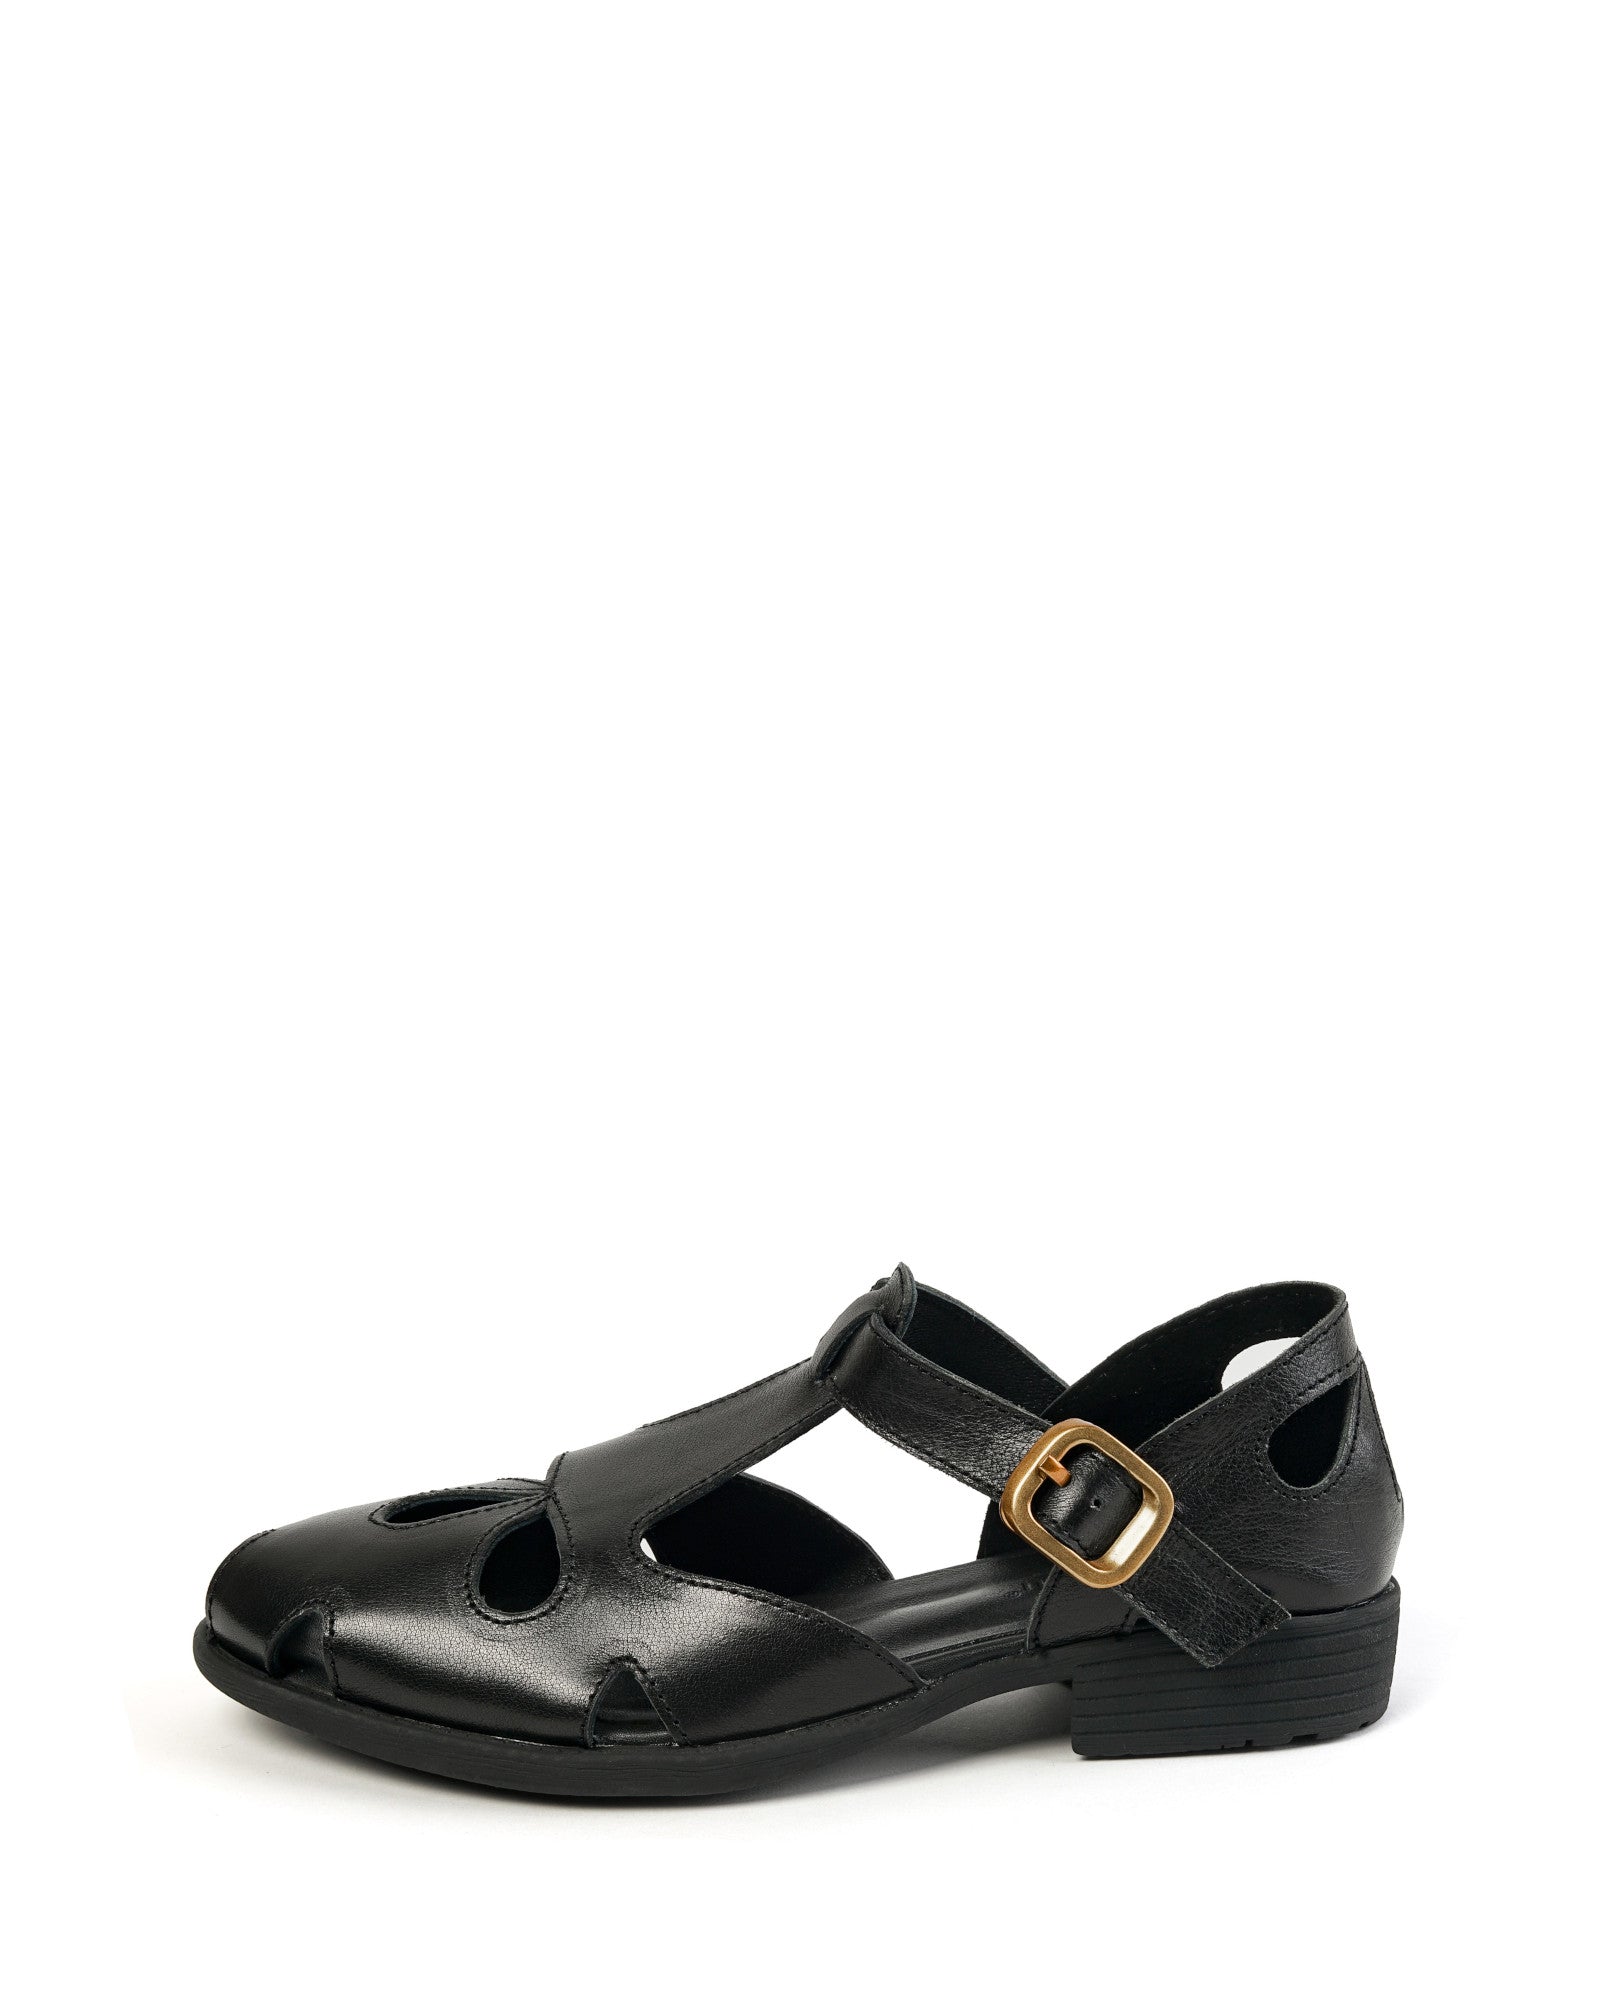 Zadar-black-leather-sandals